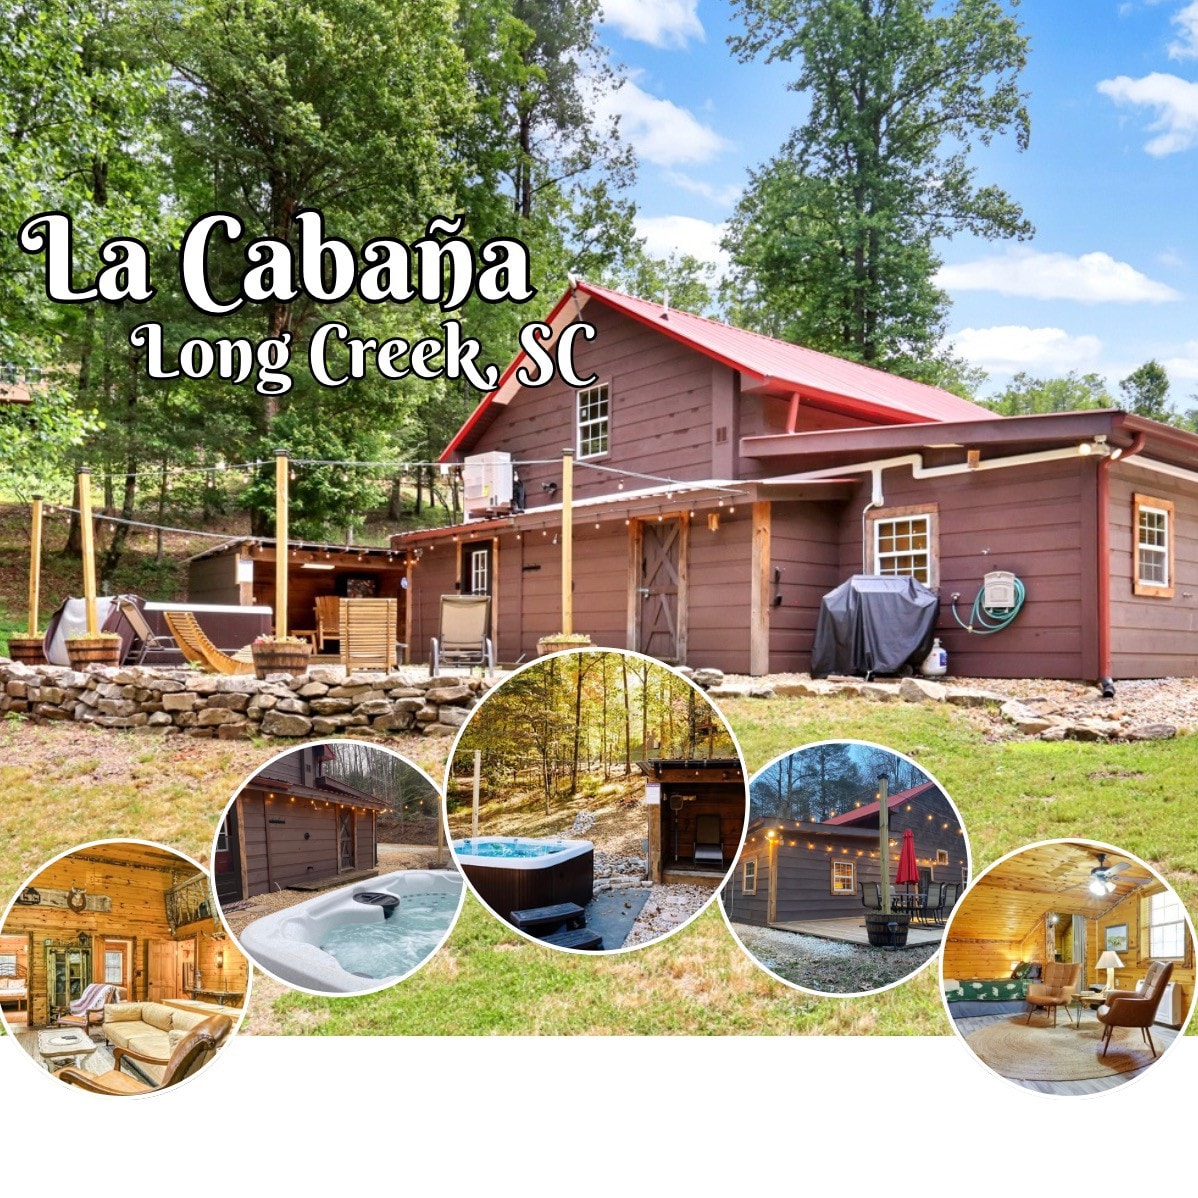 La Cabaña - The Cabin in Long Creek